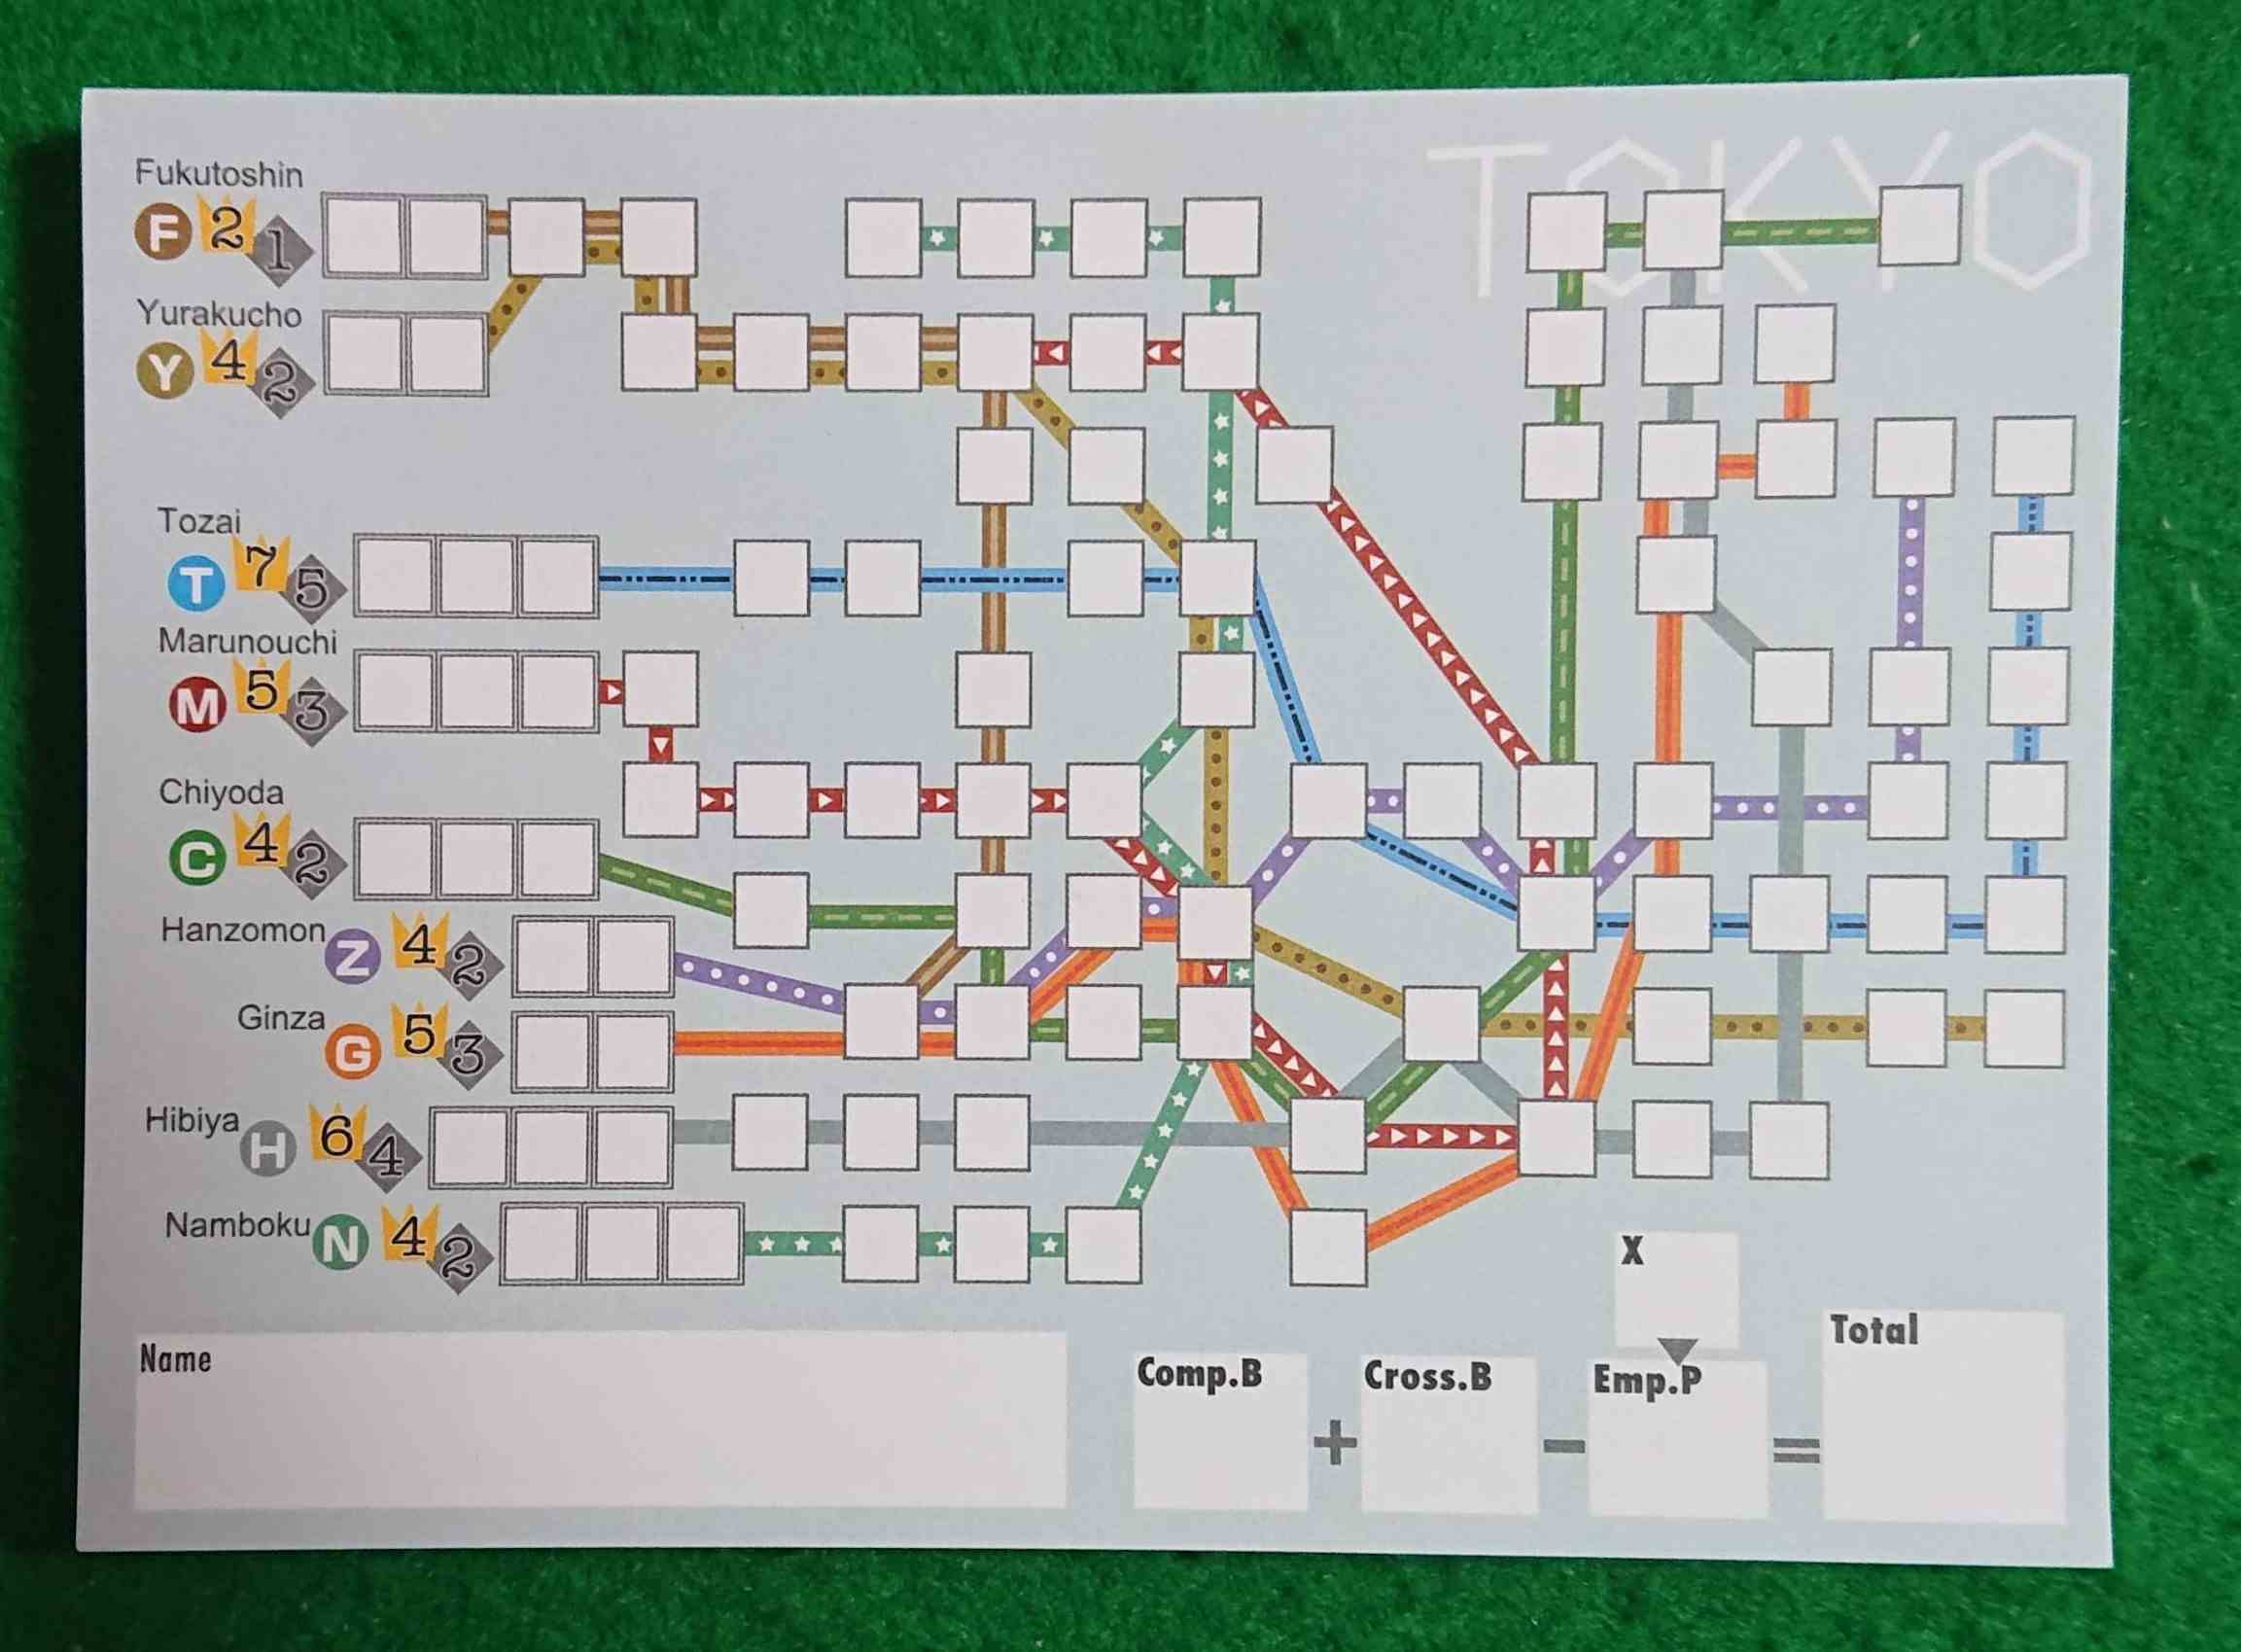 メトロックス 地下鉄の路線を完成させよう 紙ペン ボードゲーム おじさんのボードゲーム カードゲーム雑記